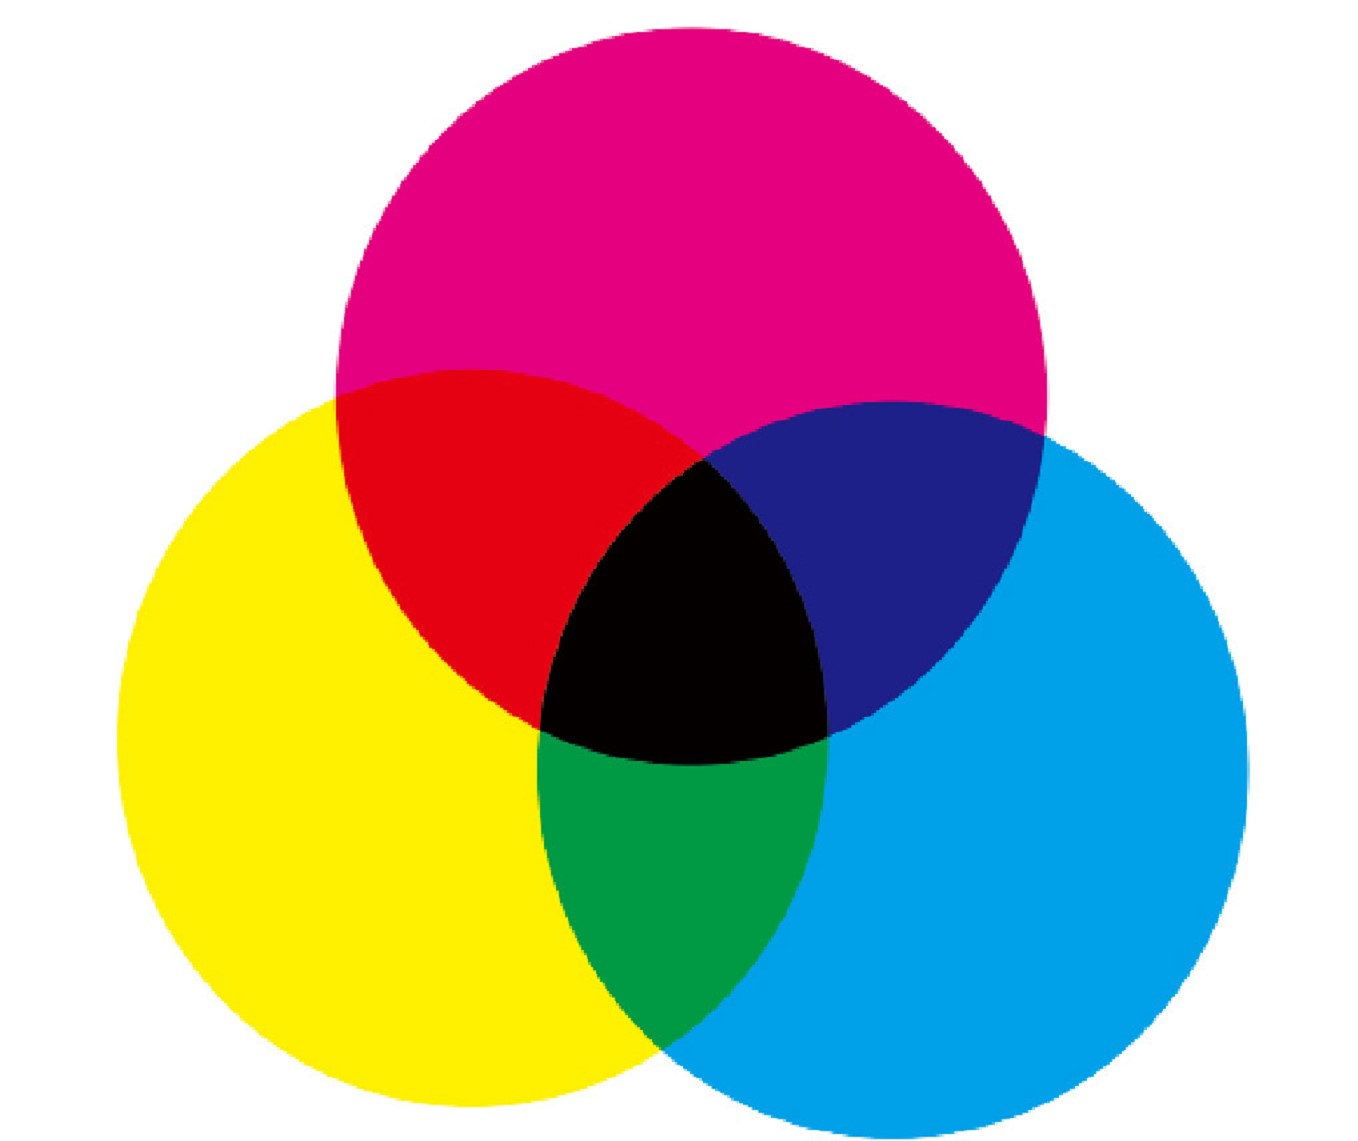 光的三原色是红,绿,绿,三间色是黄,品红,青,三原色混合,三间色混合